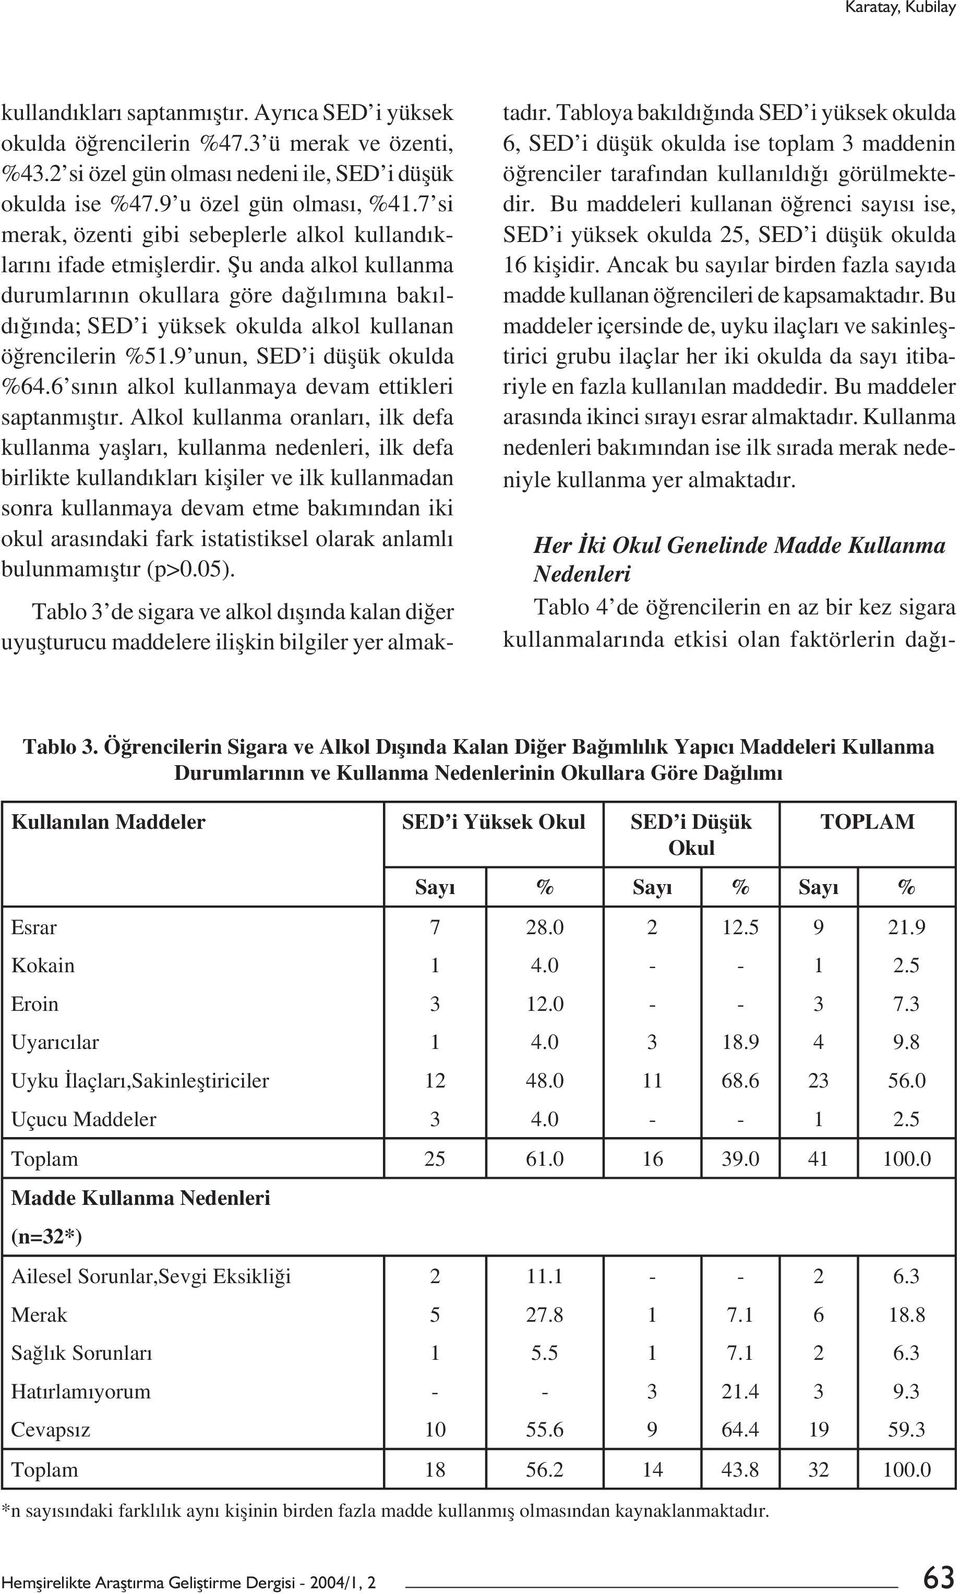 Șu anda alkol kullanma durumlarının okullara göre dağılımına bakıldığında; SED i yüksek okulda alkol kullanan öğrencilerin %51.9 unun, SED i düșük okulda %64.